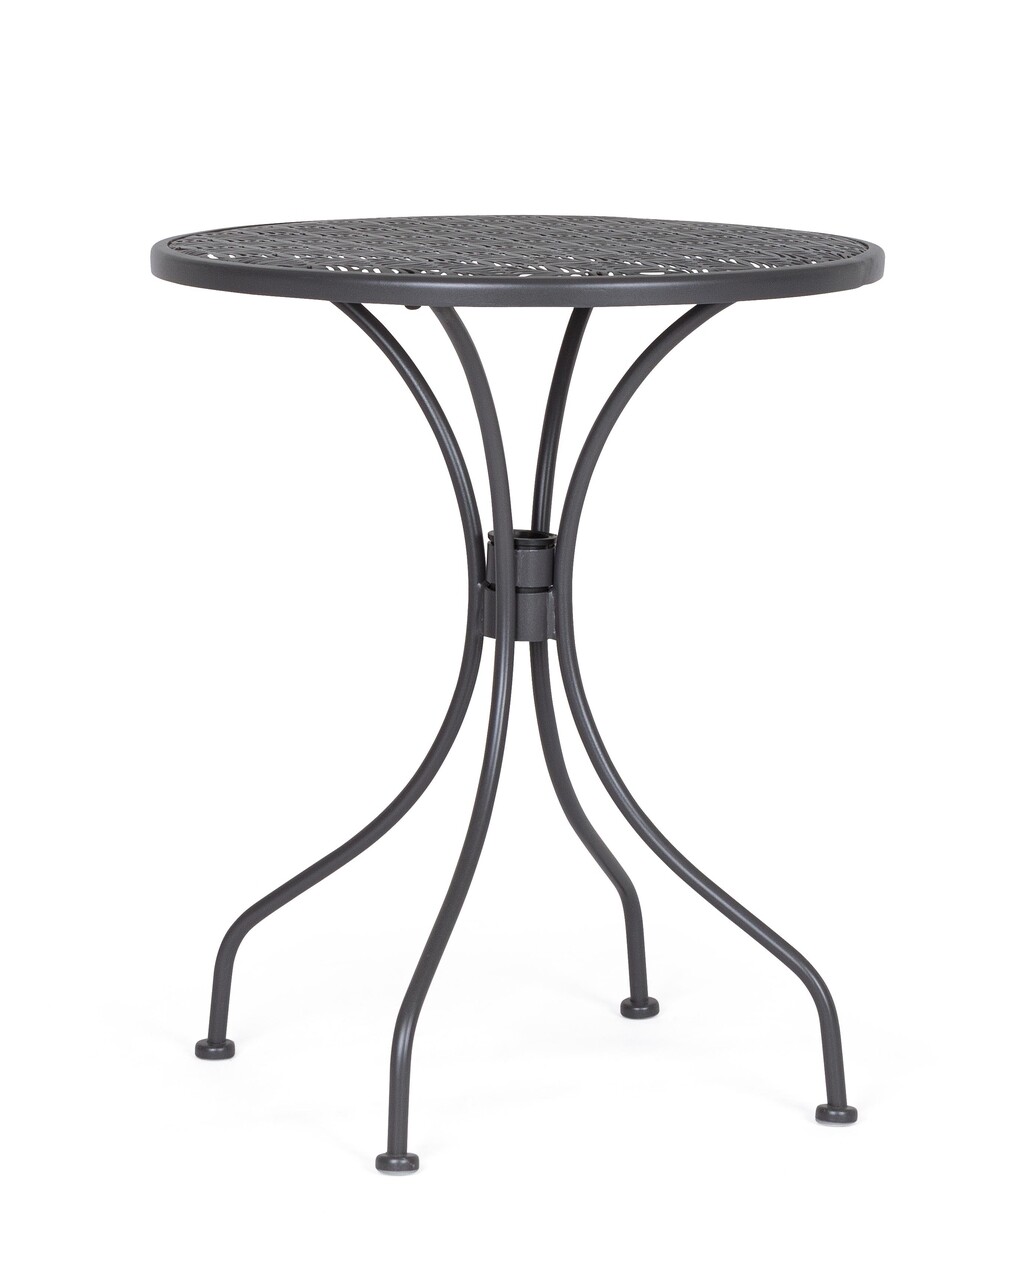 Lizette Kerti asztal, Bizzotto, Ø60 x 71 cm, acél, matt felület, szénszürke